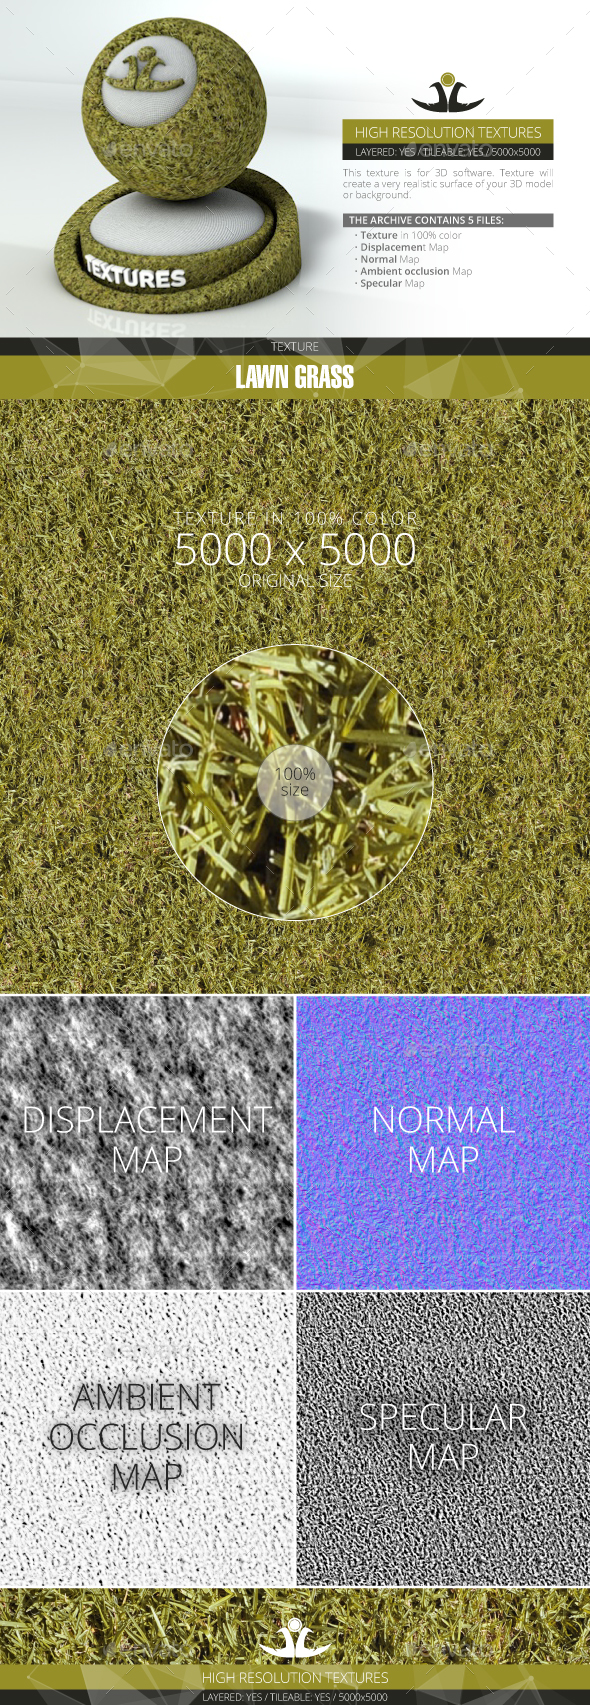 Lawn Grass 4 - 3Docean 21001324